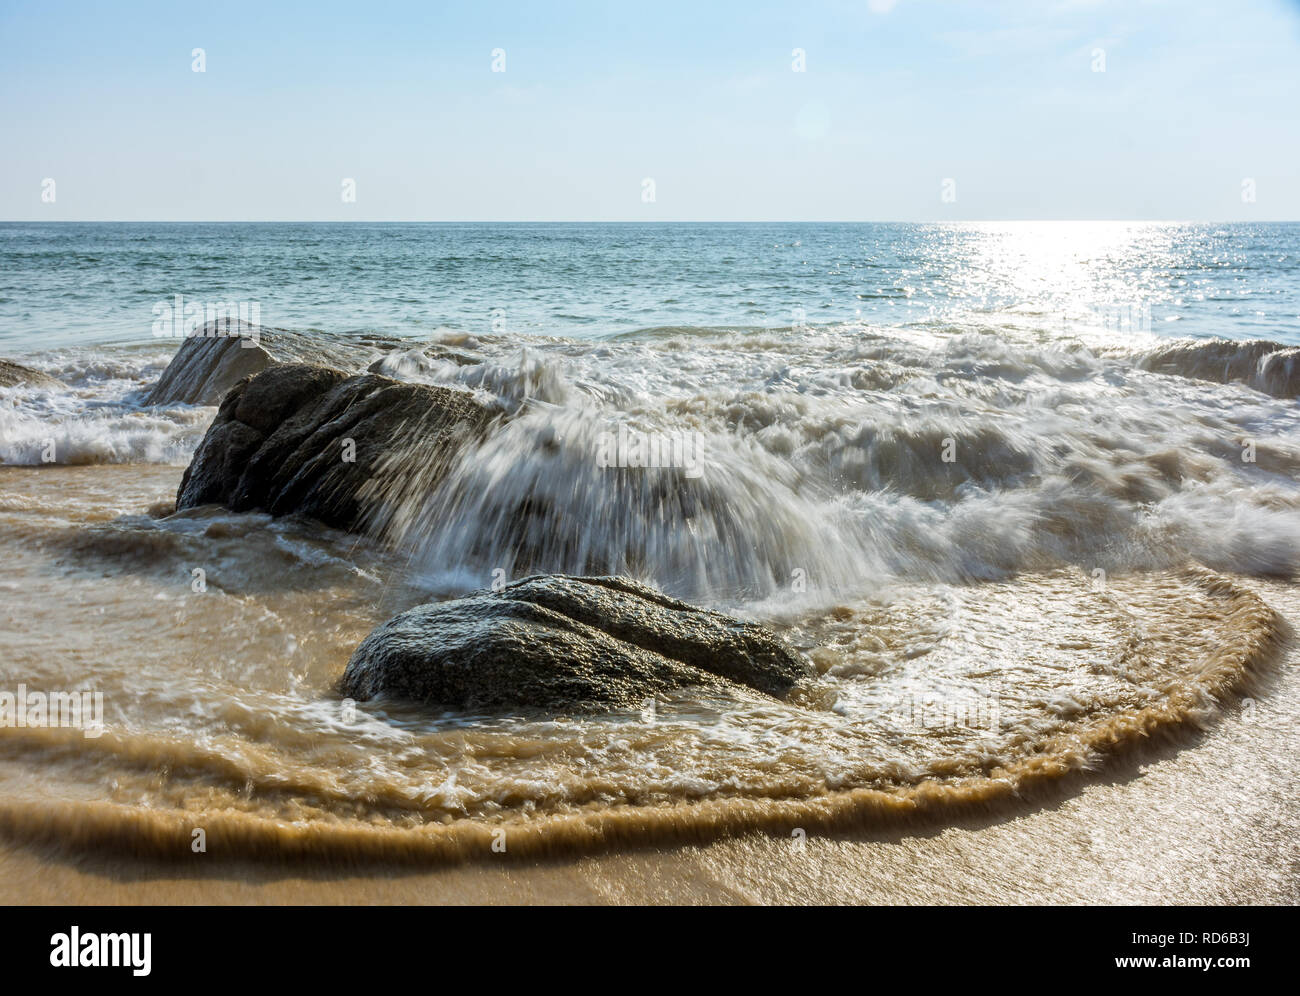 Eine kleine Welle von einem ruhigen Meer stürzt über grosse Felsen an einem Sandstrand. Stockfoto